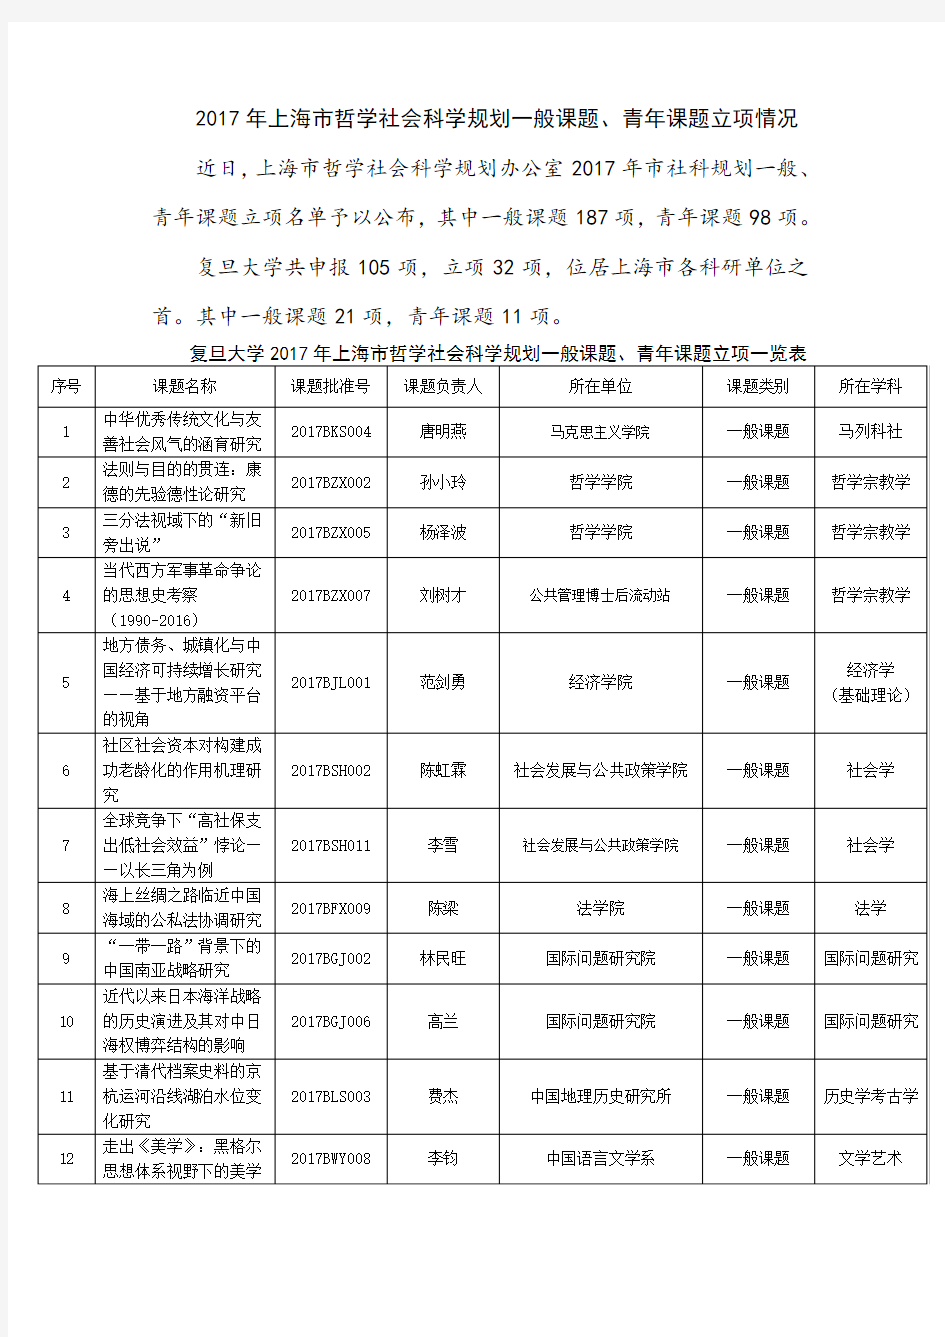 2017年上海哲学社会科学规划一般课题青年